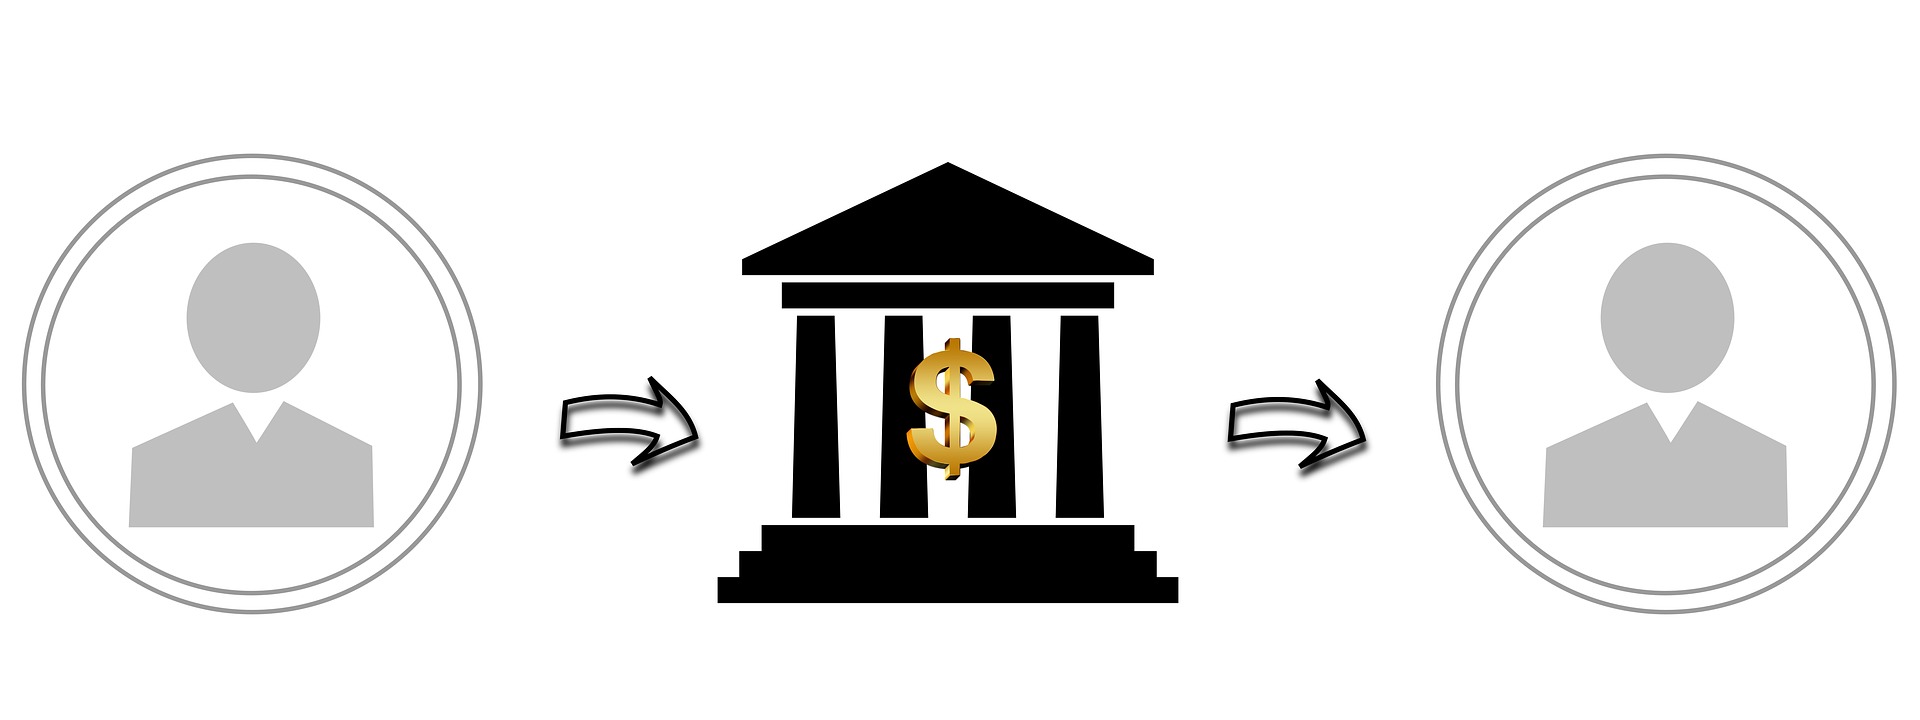 Phí chuyển tiền khác ngân hàng – Bài toán chi phí đáng cân nhắc